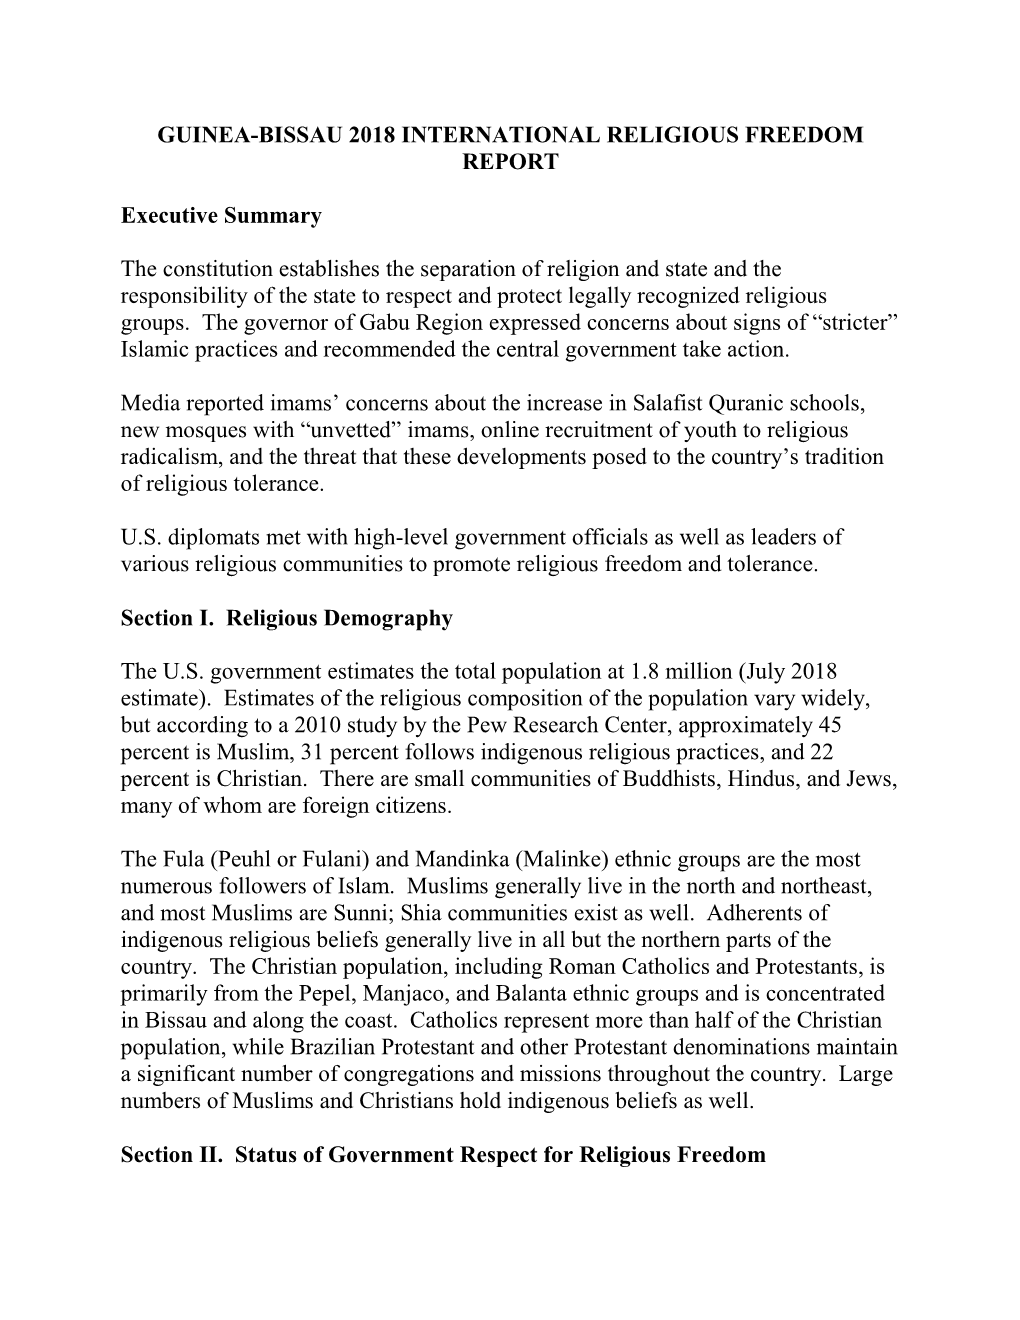 Guinea-Bissau 2018 International Religious Freedom Report